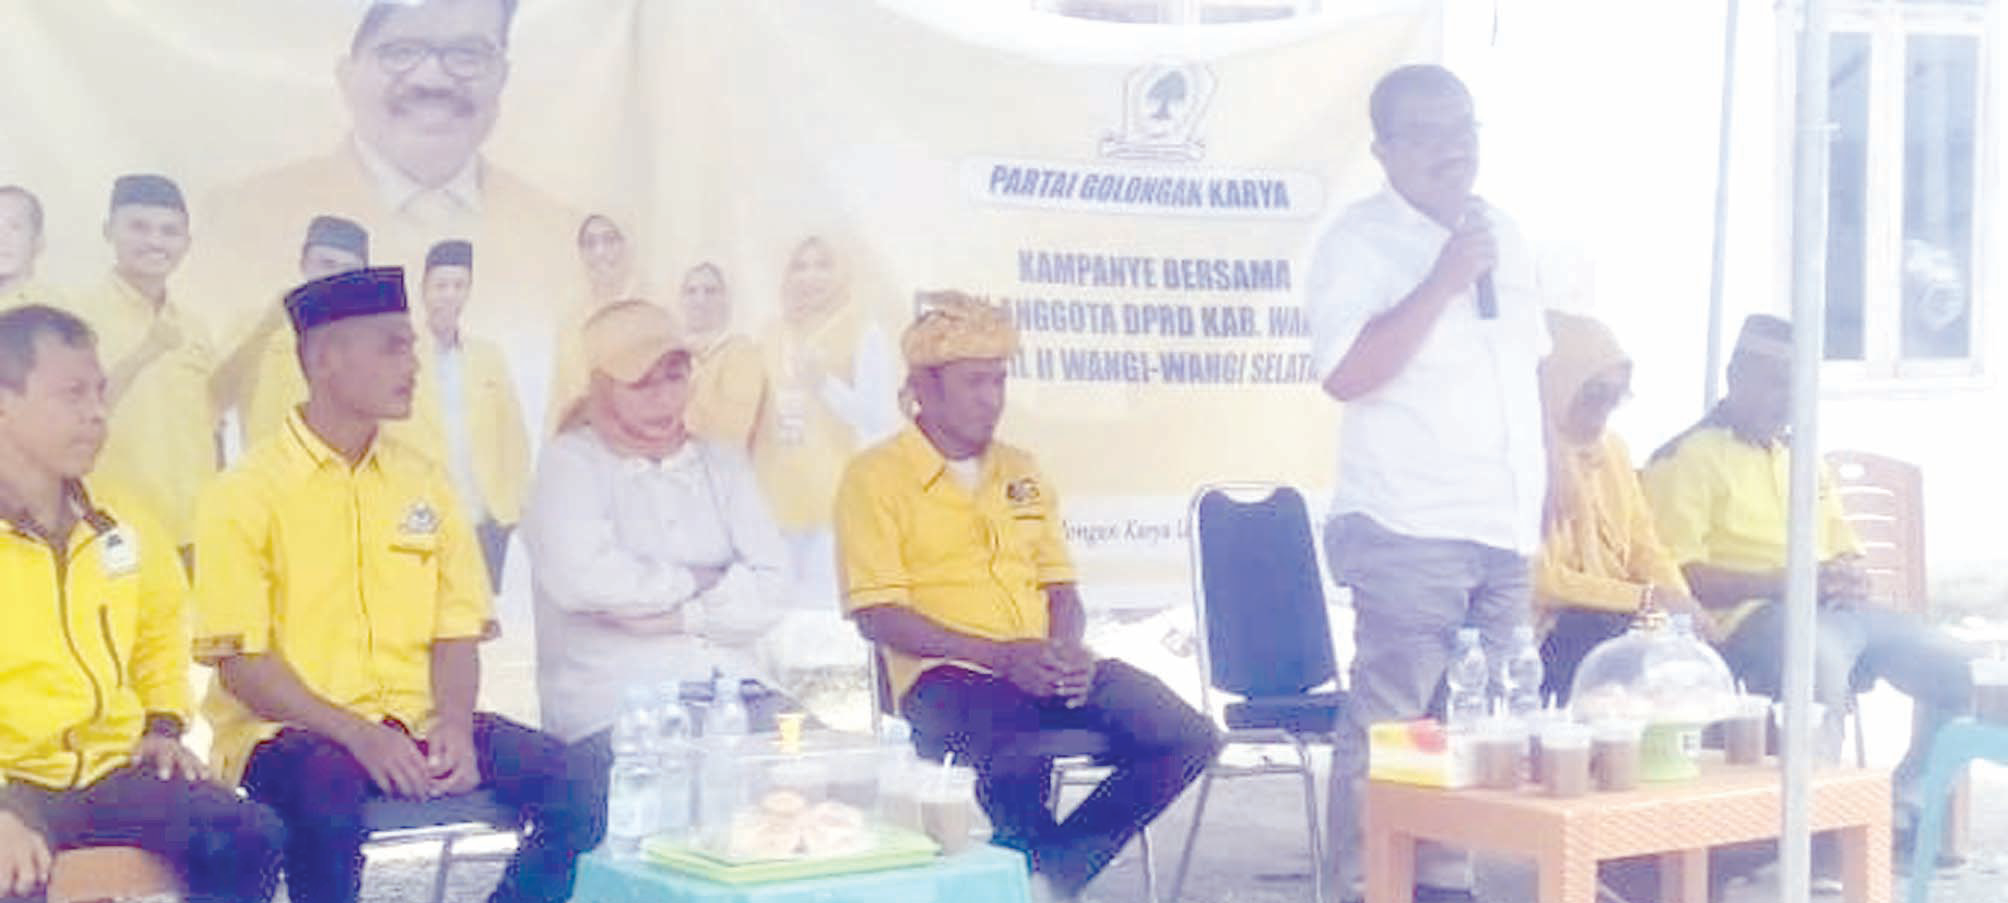 Ketua DPD Golkar Wakatobi Arhawi berkampanye di Pulau Wangi-wangi Selatan, kemarin.